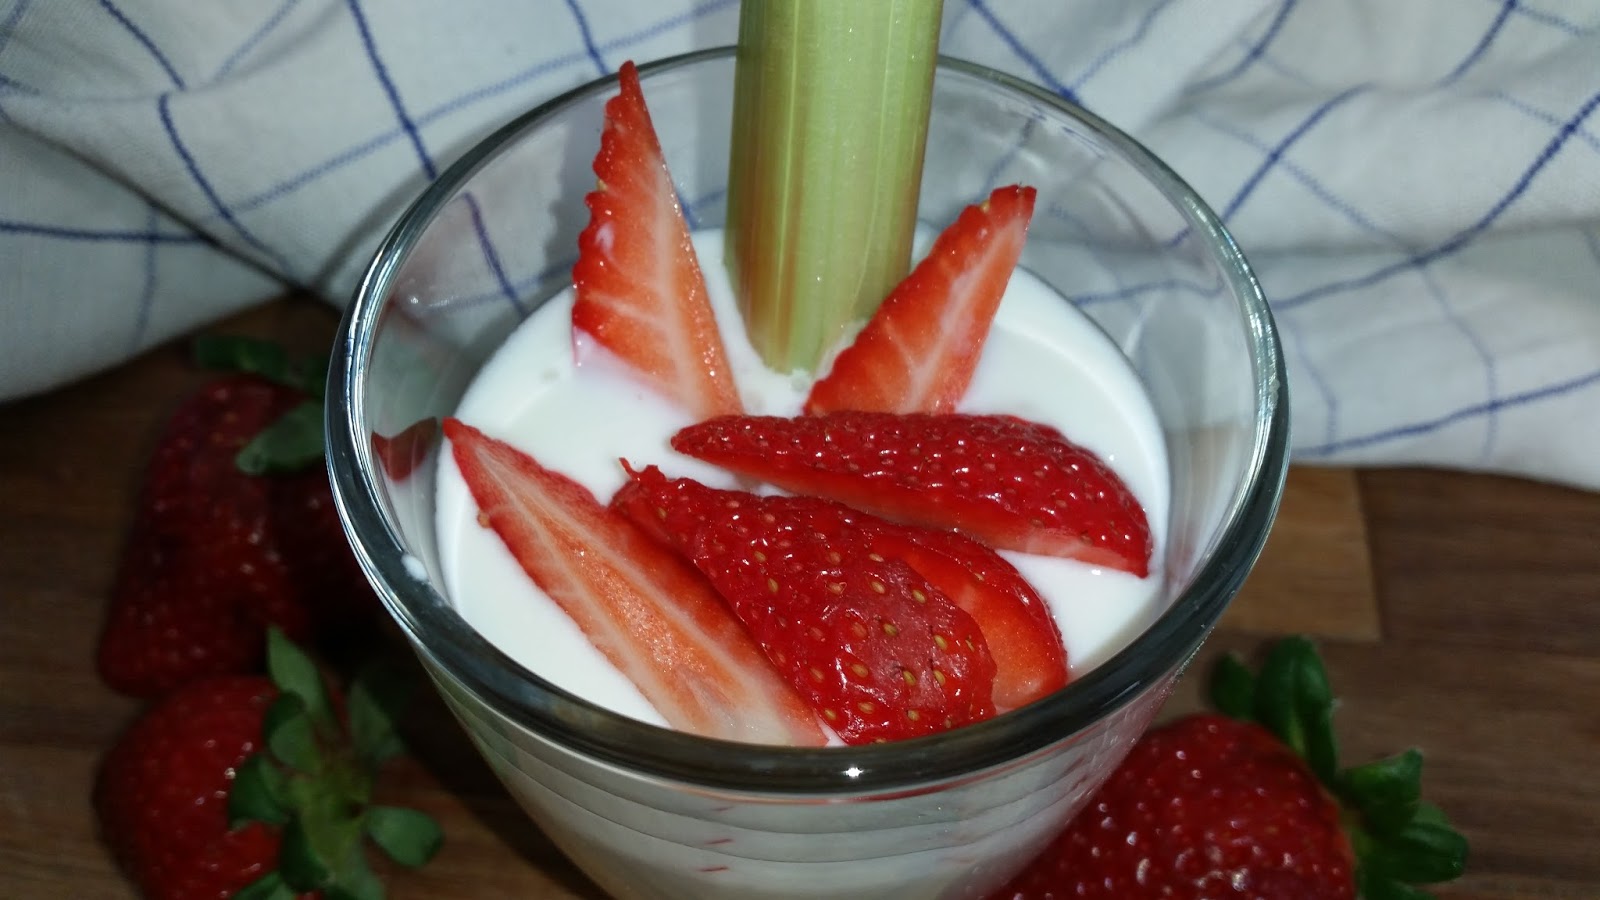 selbstgemachter Joghurt mit Erdbeeren im Glas